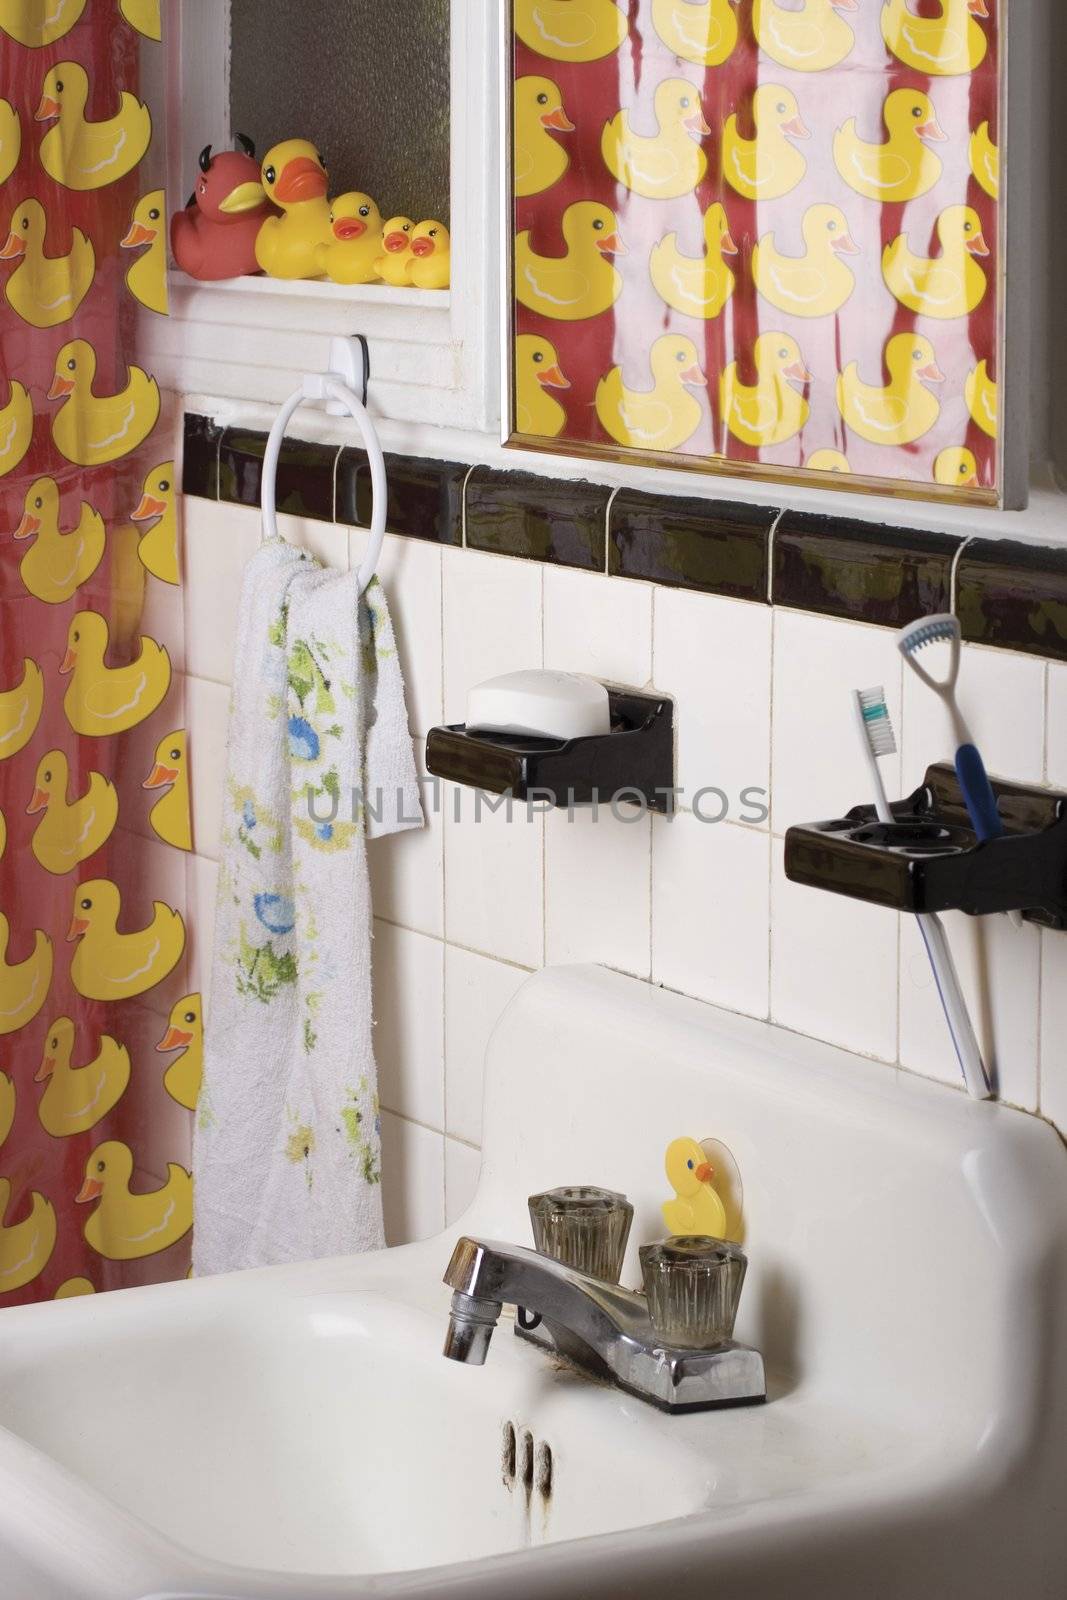 Rubber ducky bathroom by mypstudio